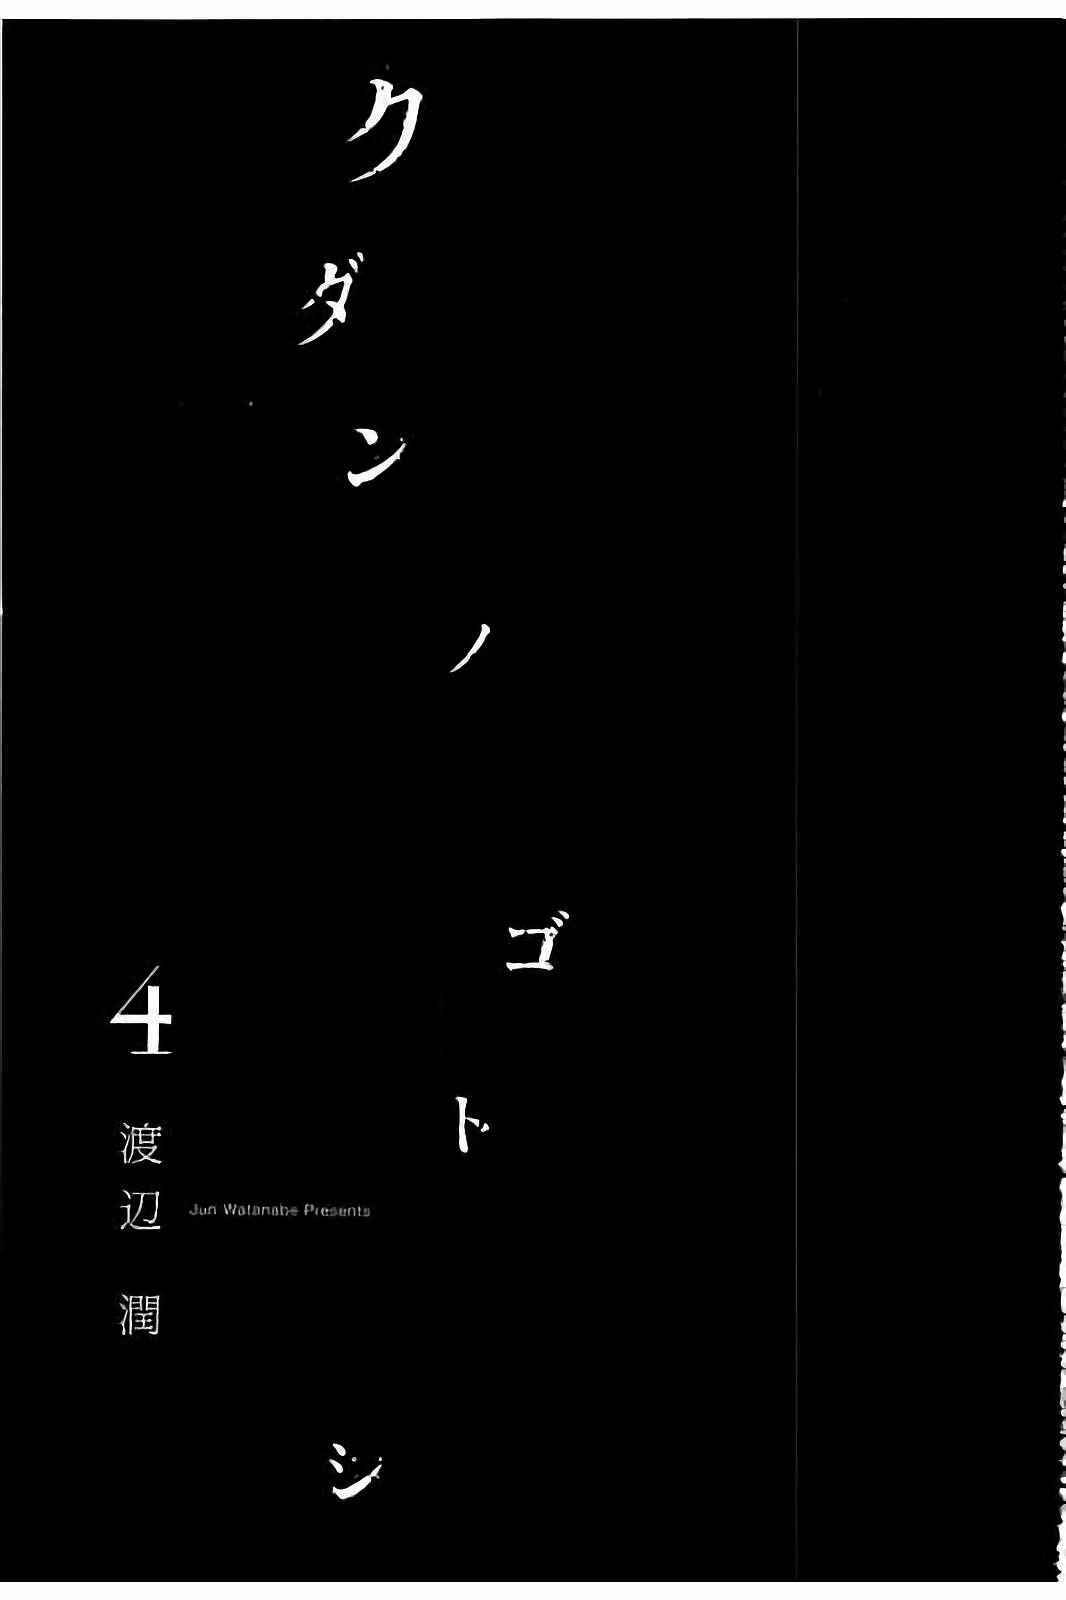 Kudan no Gotoshi Vol. 4 Ch. 28 Hikaru Tsujimoto < Part 5 > Chizuru Sakurai < Part 4 >